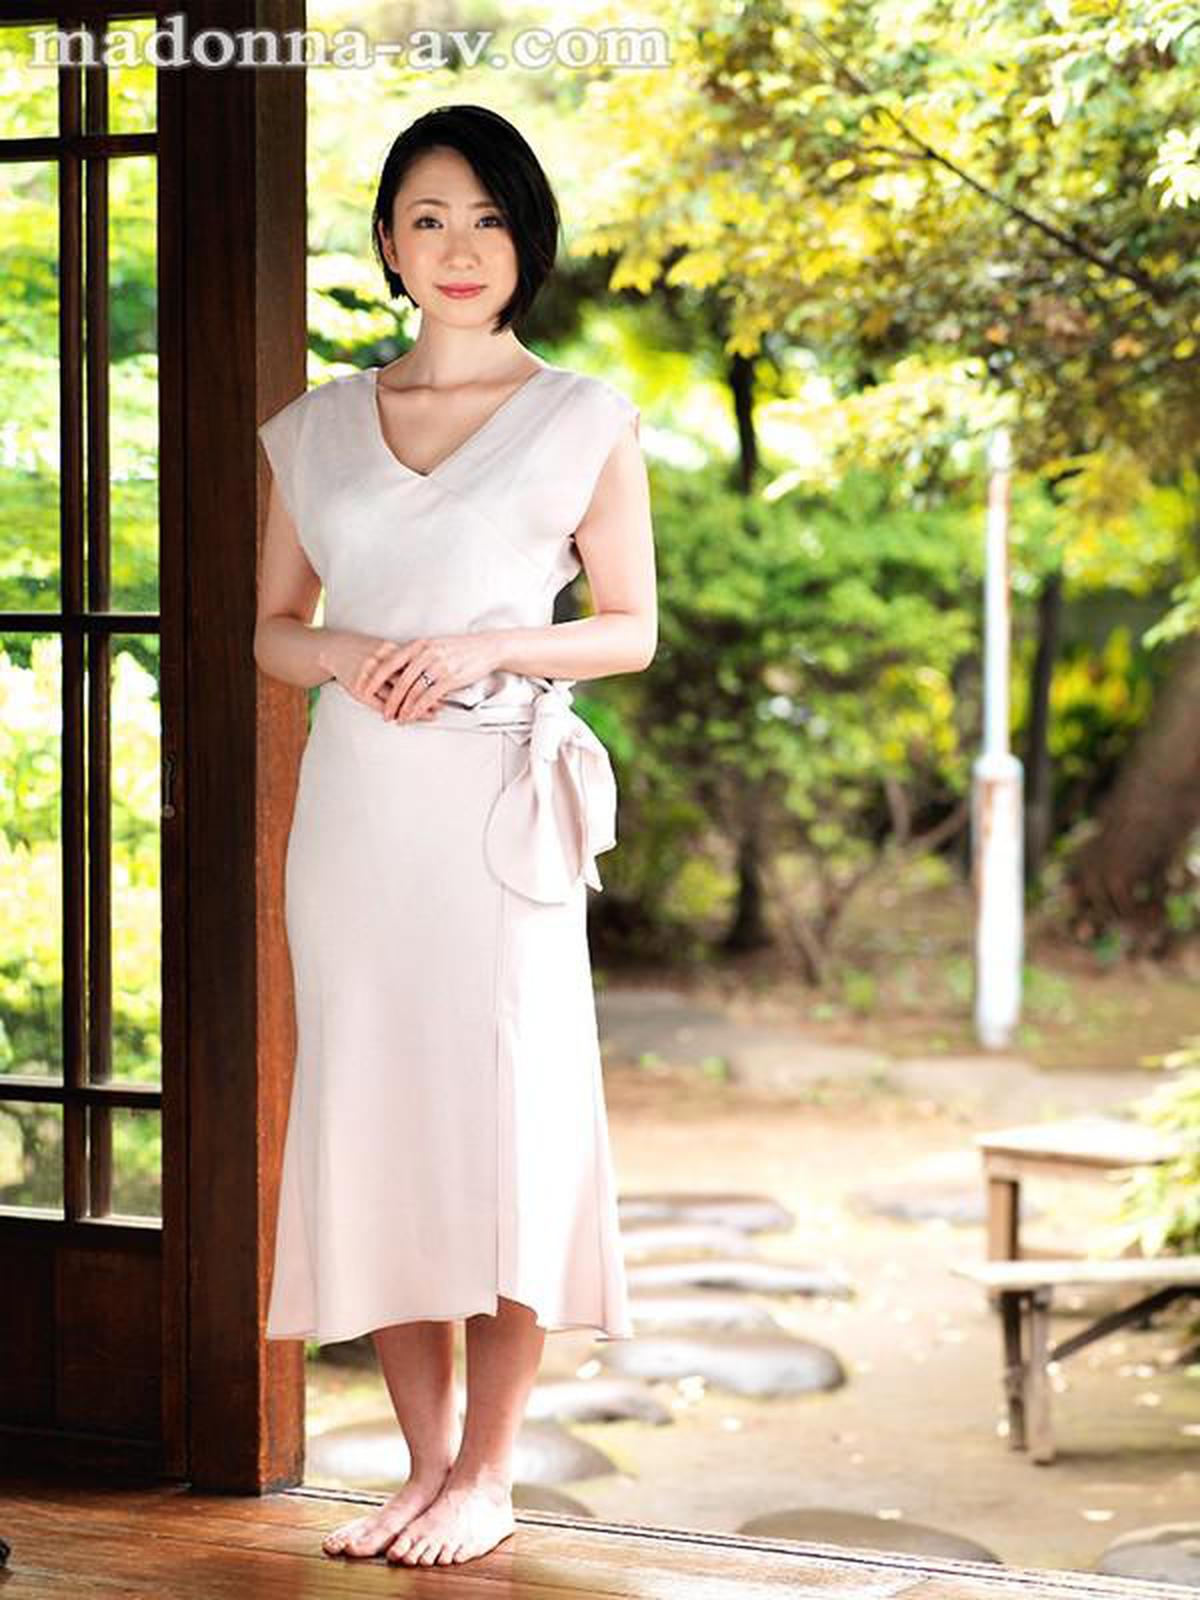 JUY-990 Exklusiv ausgewählte Good Woman-. Arbeiten in einem berühmten Luxusmarkengeschäft Aktive verheiratete Verkäuferin Sei Maihara 34 Jahre alt AV-Debüt! !!